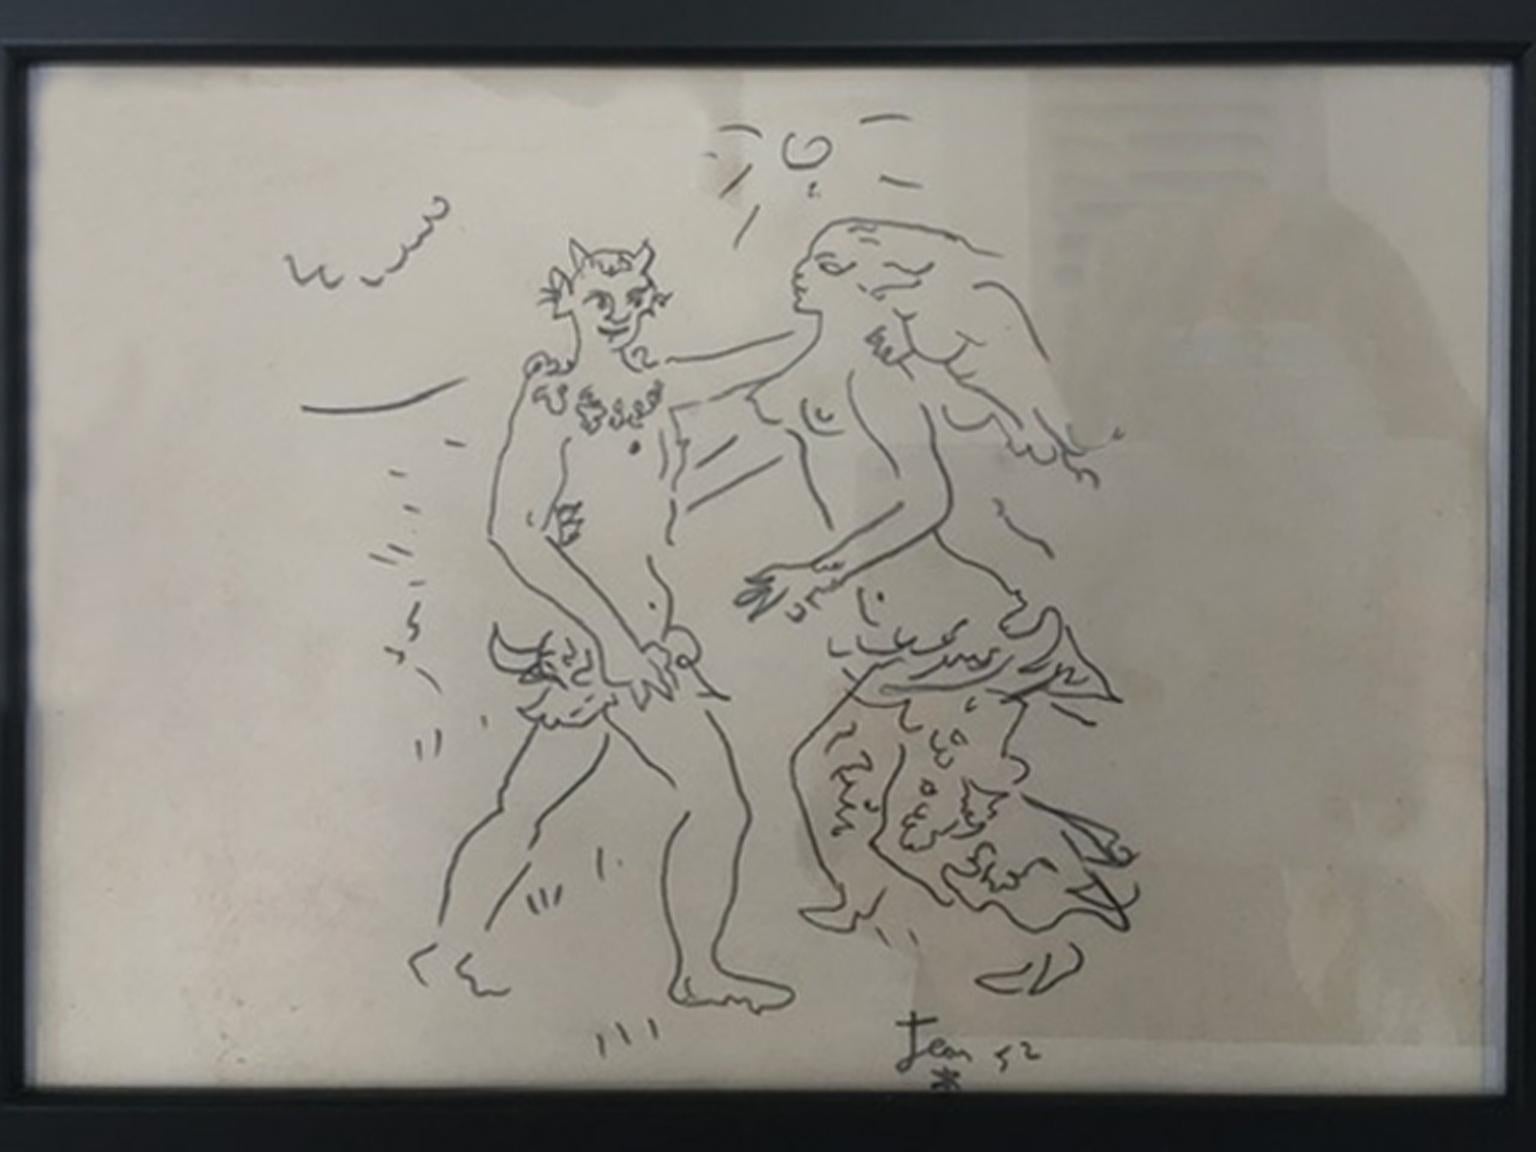 Diese zarte Zeichnung des Tanzes zwischen einem Faun und der Nimph, sieht aus wie die klaren Linienzeichnungen von Jean Cocteau.
Das können wir in dieser Szene sehen,  die Anmut und Einfachheit der neoklassischen Fantasiewelt.